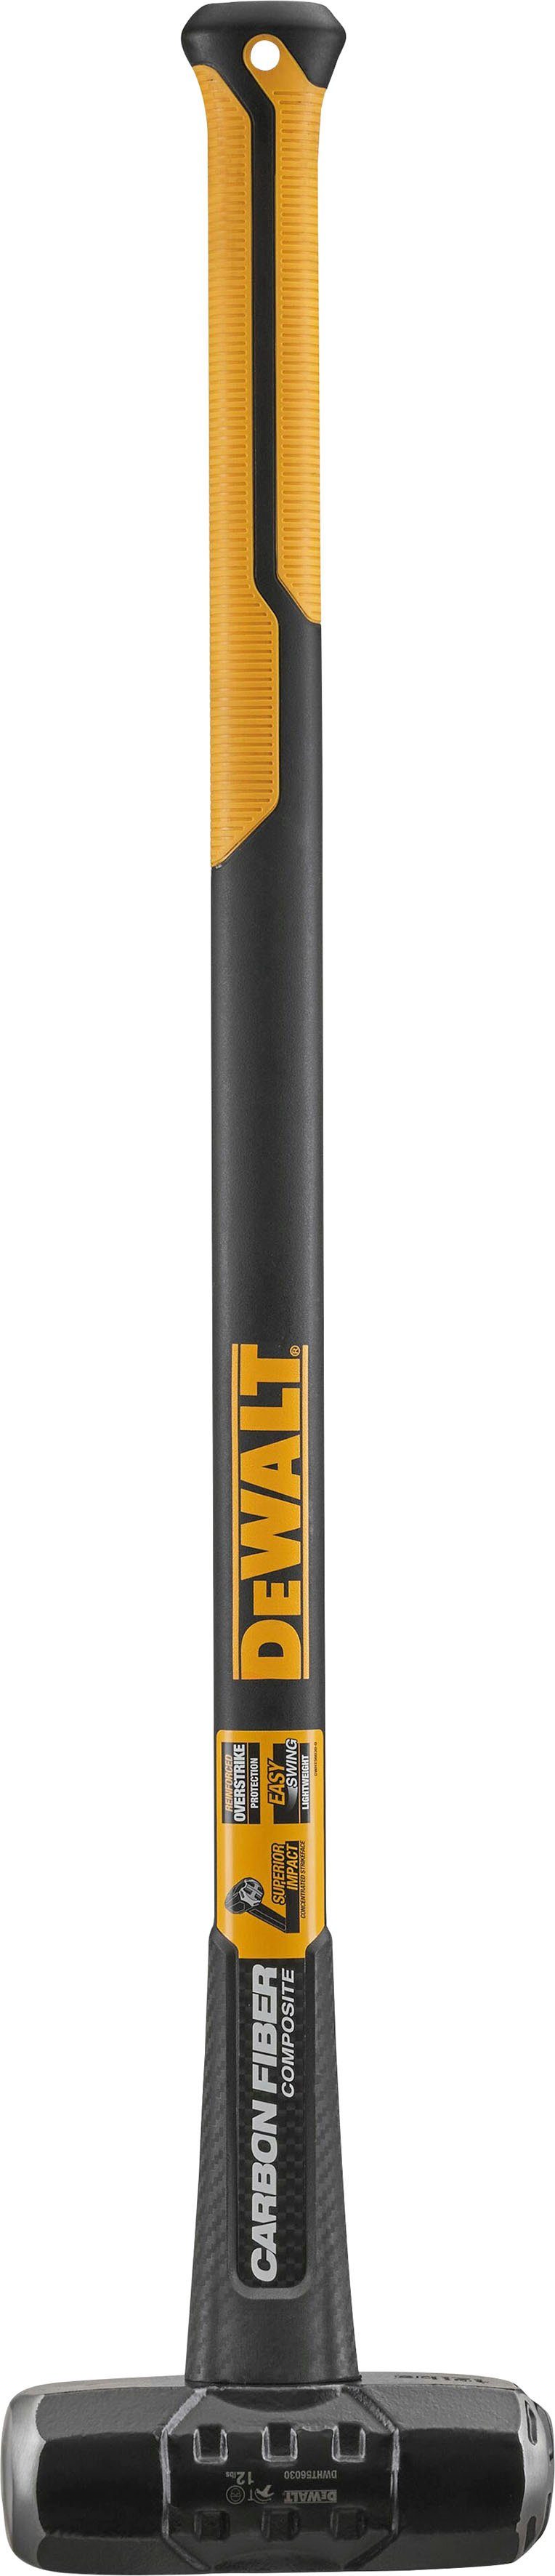 Vorschlaghammer DWHT56030-0 DeWalt